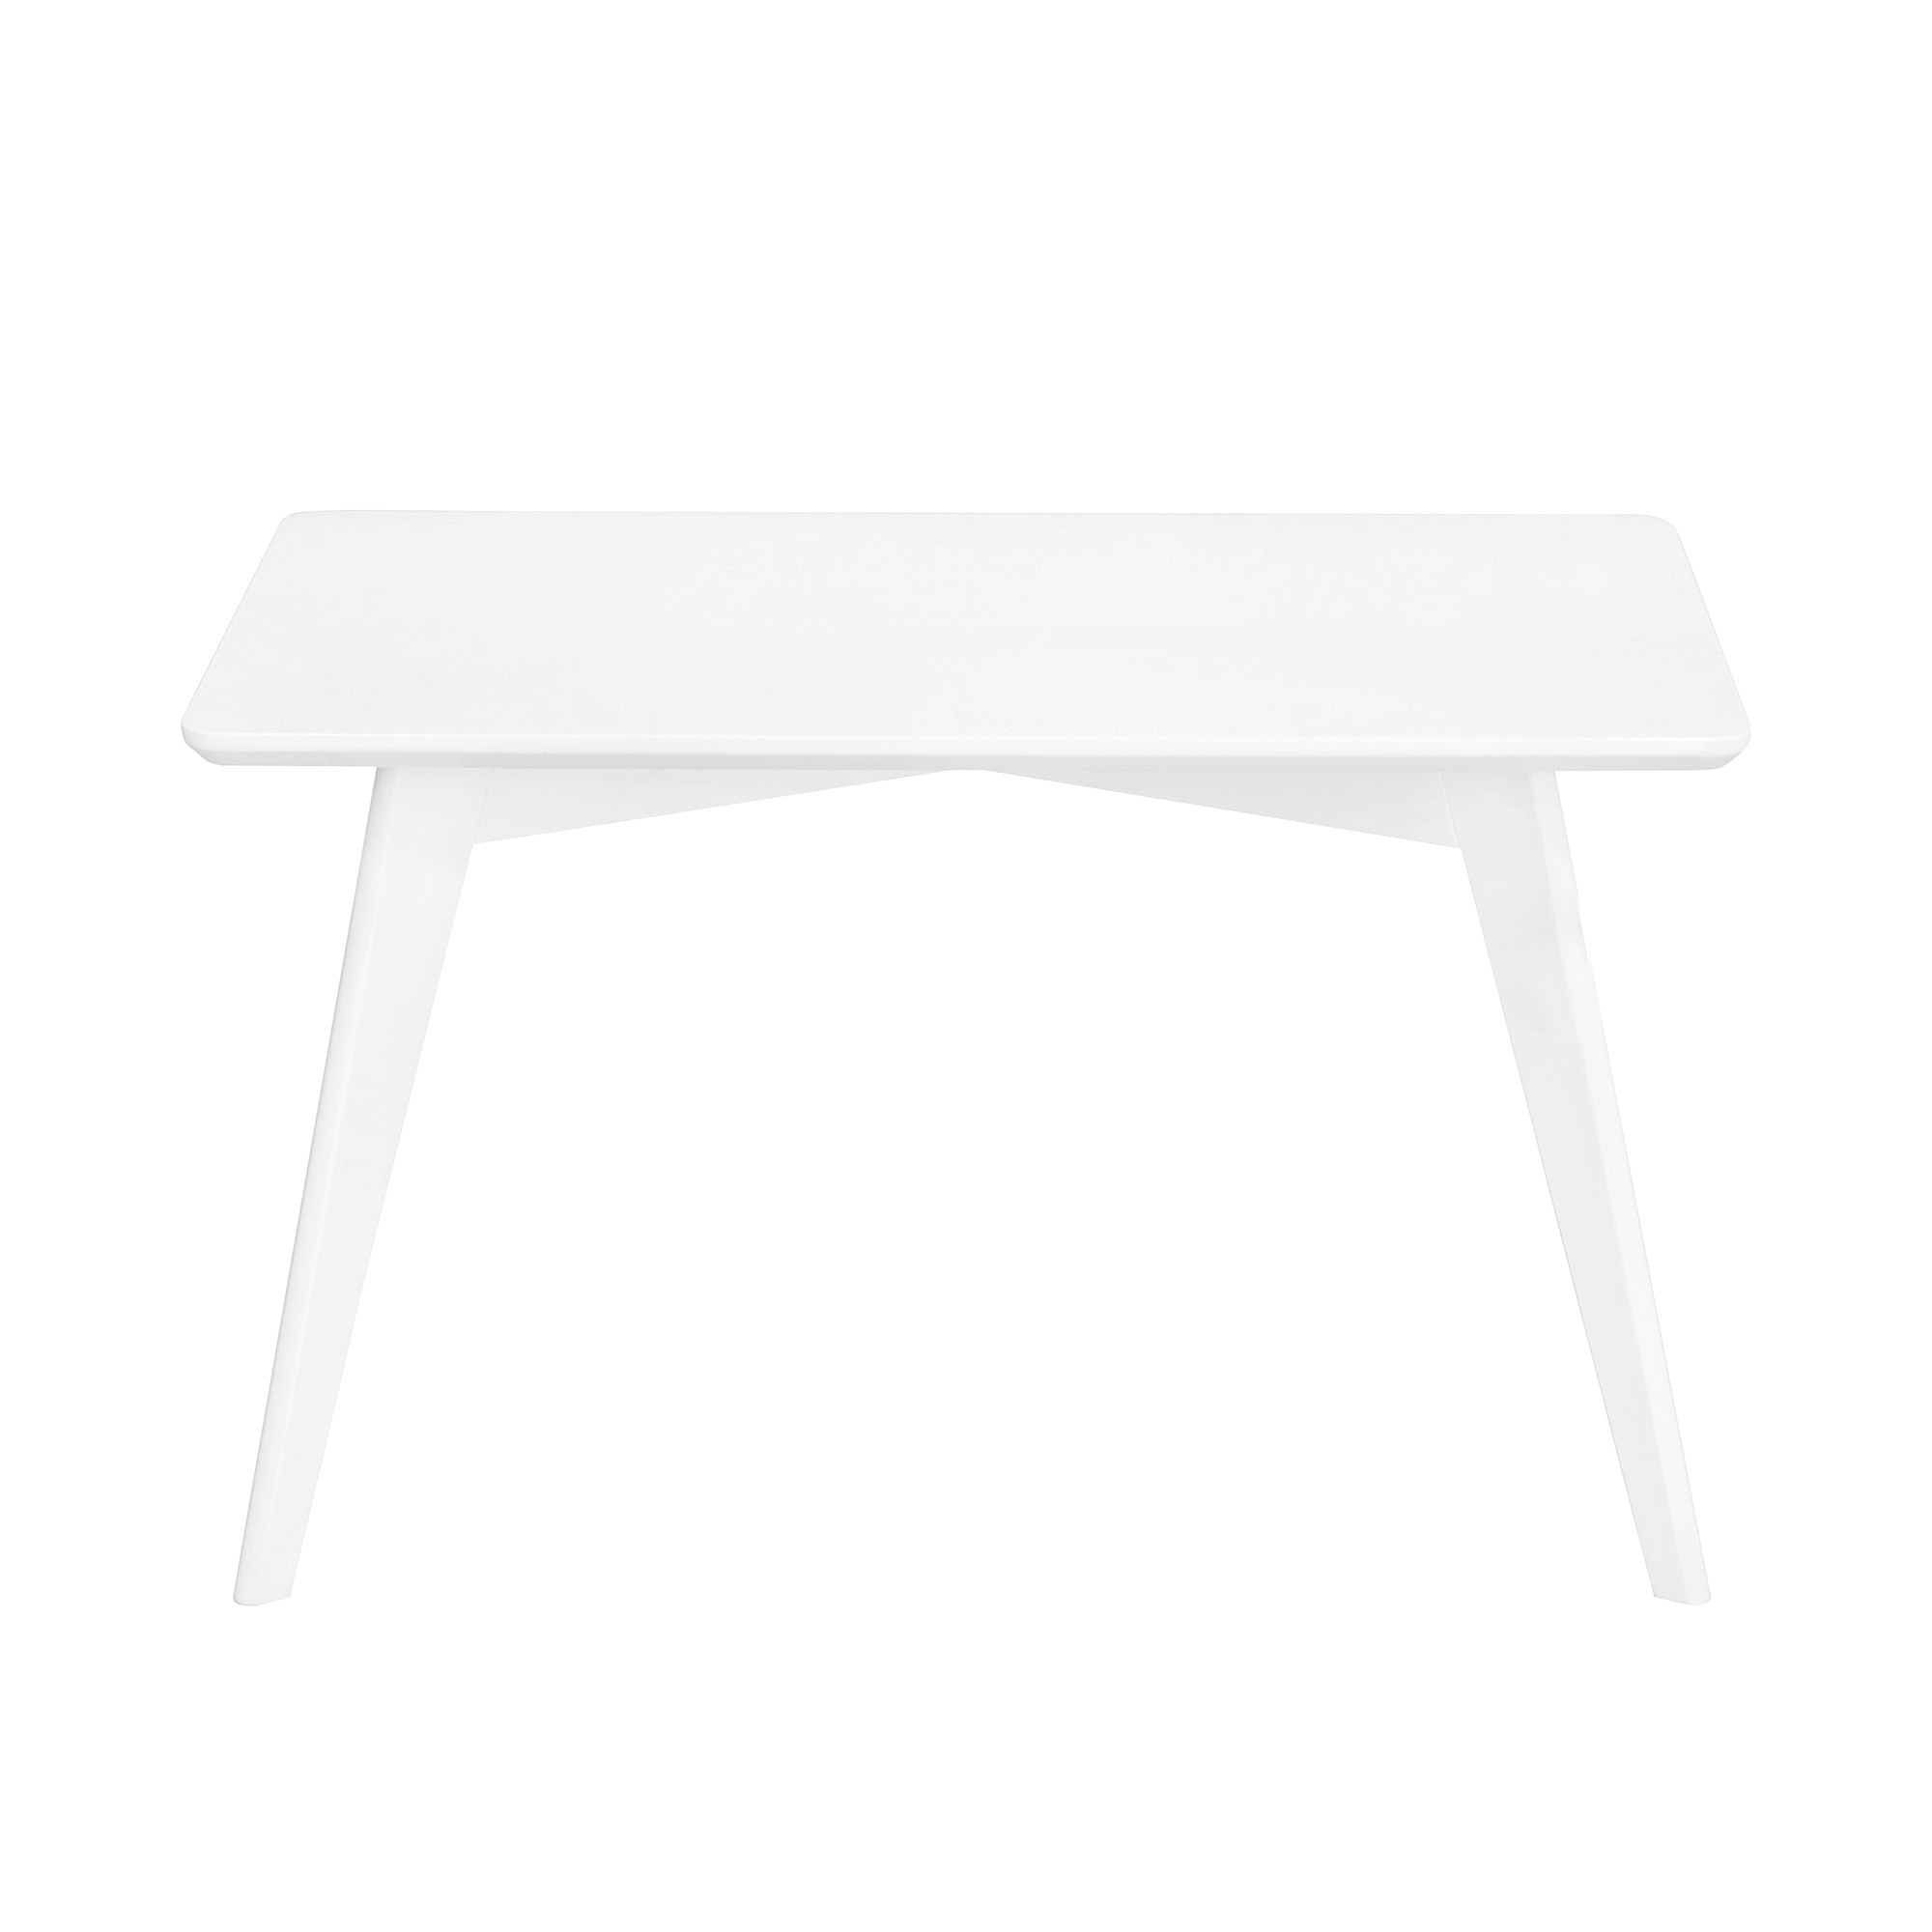 Стол журнальный Glasar Ницца белый, размер 90х55х55 см - фото 2